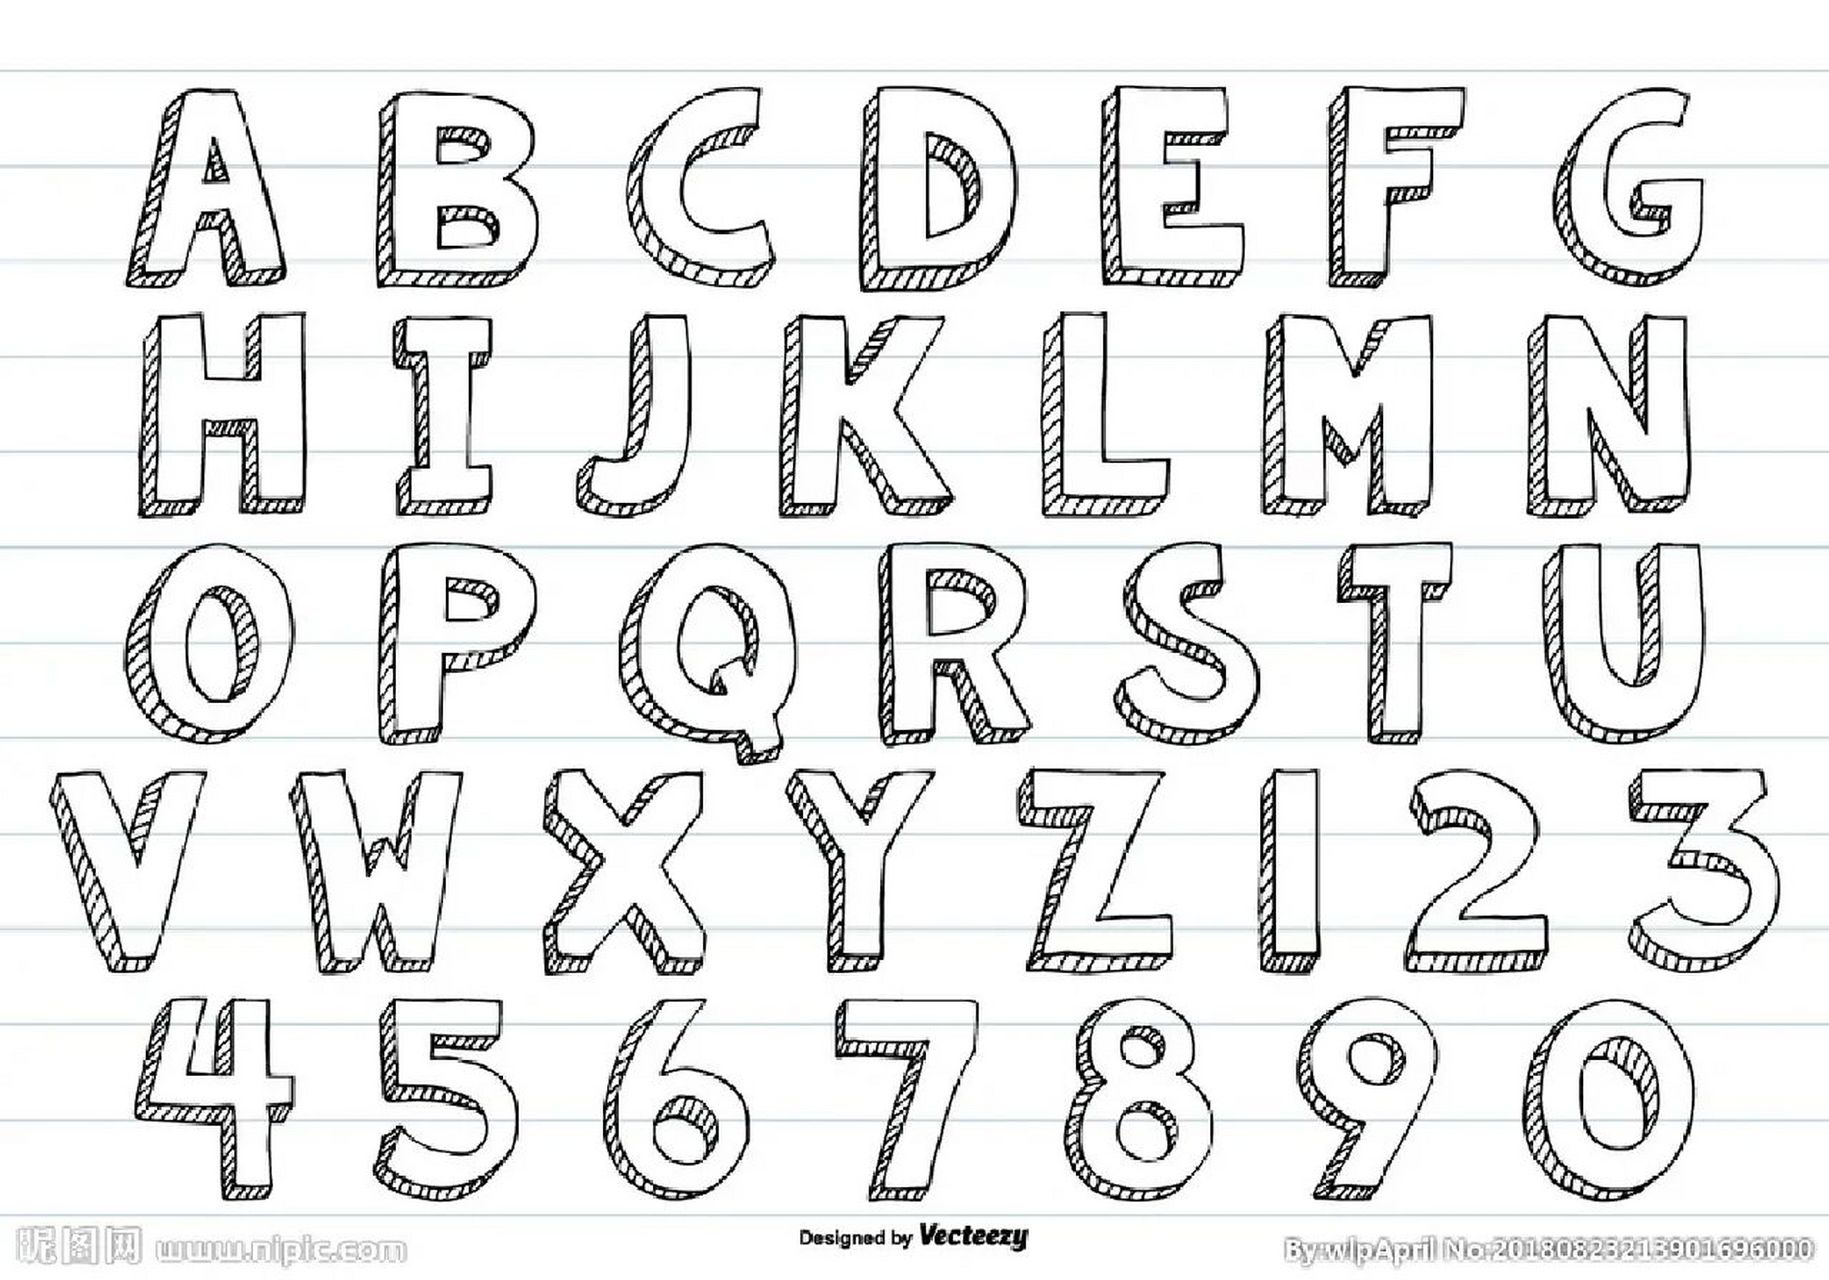 英语字母表 表图一可以让孩子涂色,排序 二和三发挥孩子想象力,自己